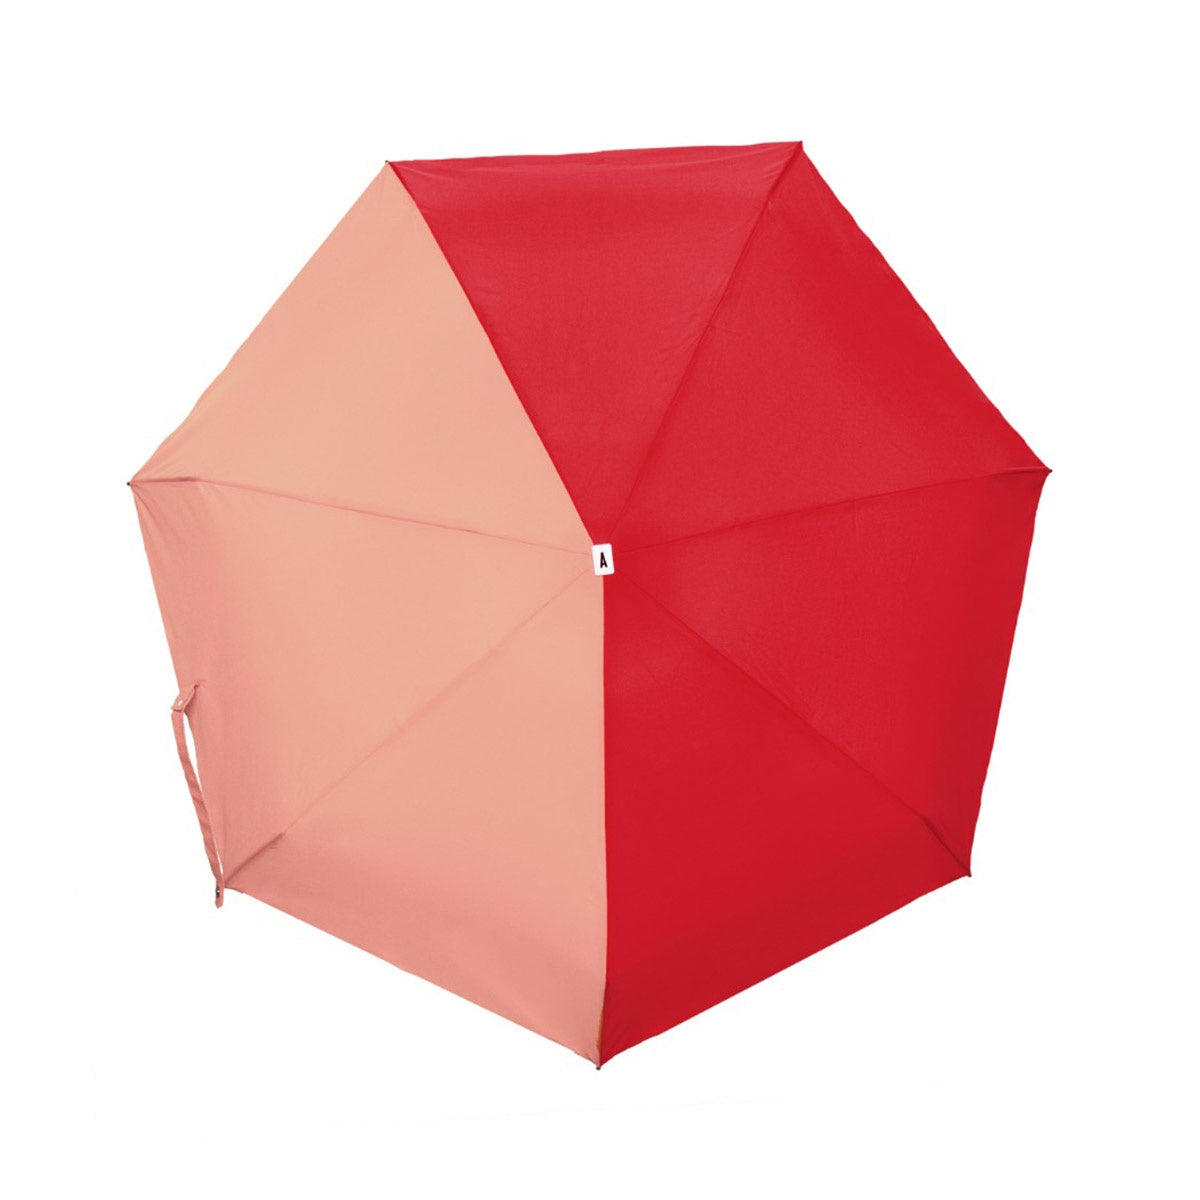 Anatole Bi Colour Micro Umbrella - Red and Coral